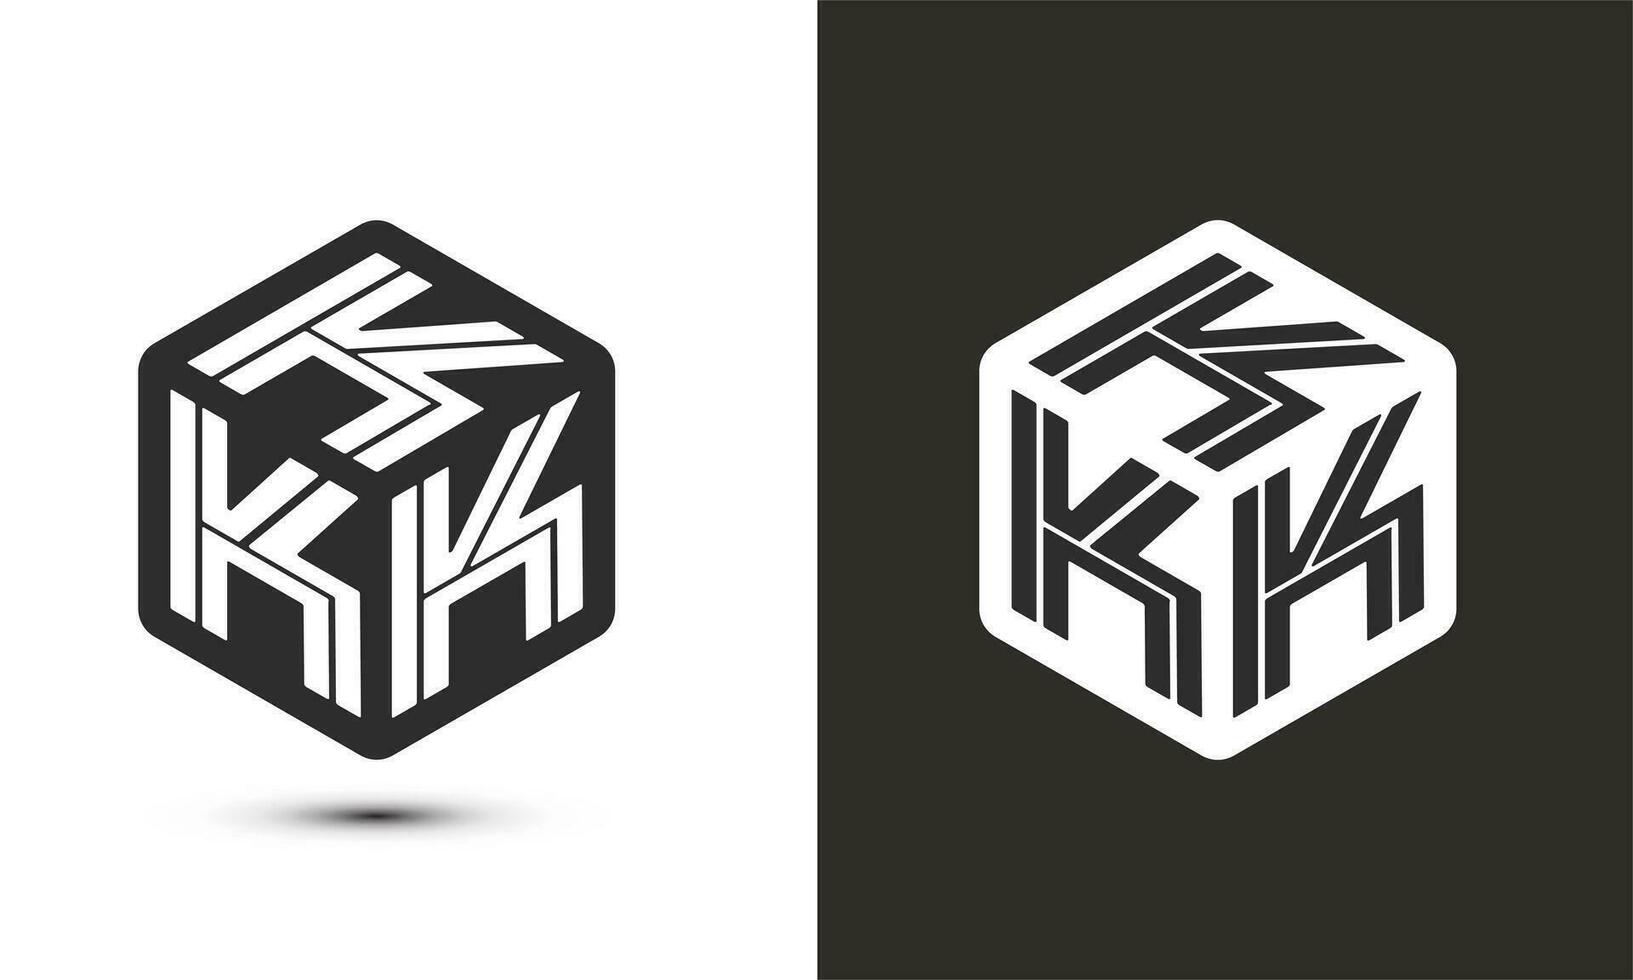 K letter logo design with illustrator cube logo, vector logo modern alphabet font overlap style. Premium Business logo icon. White color on black background